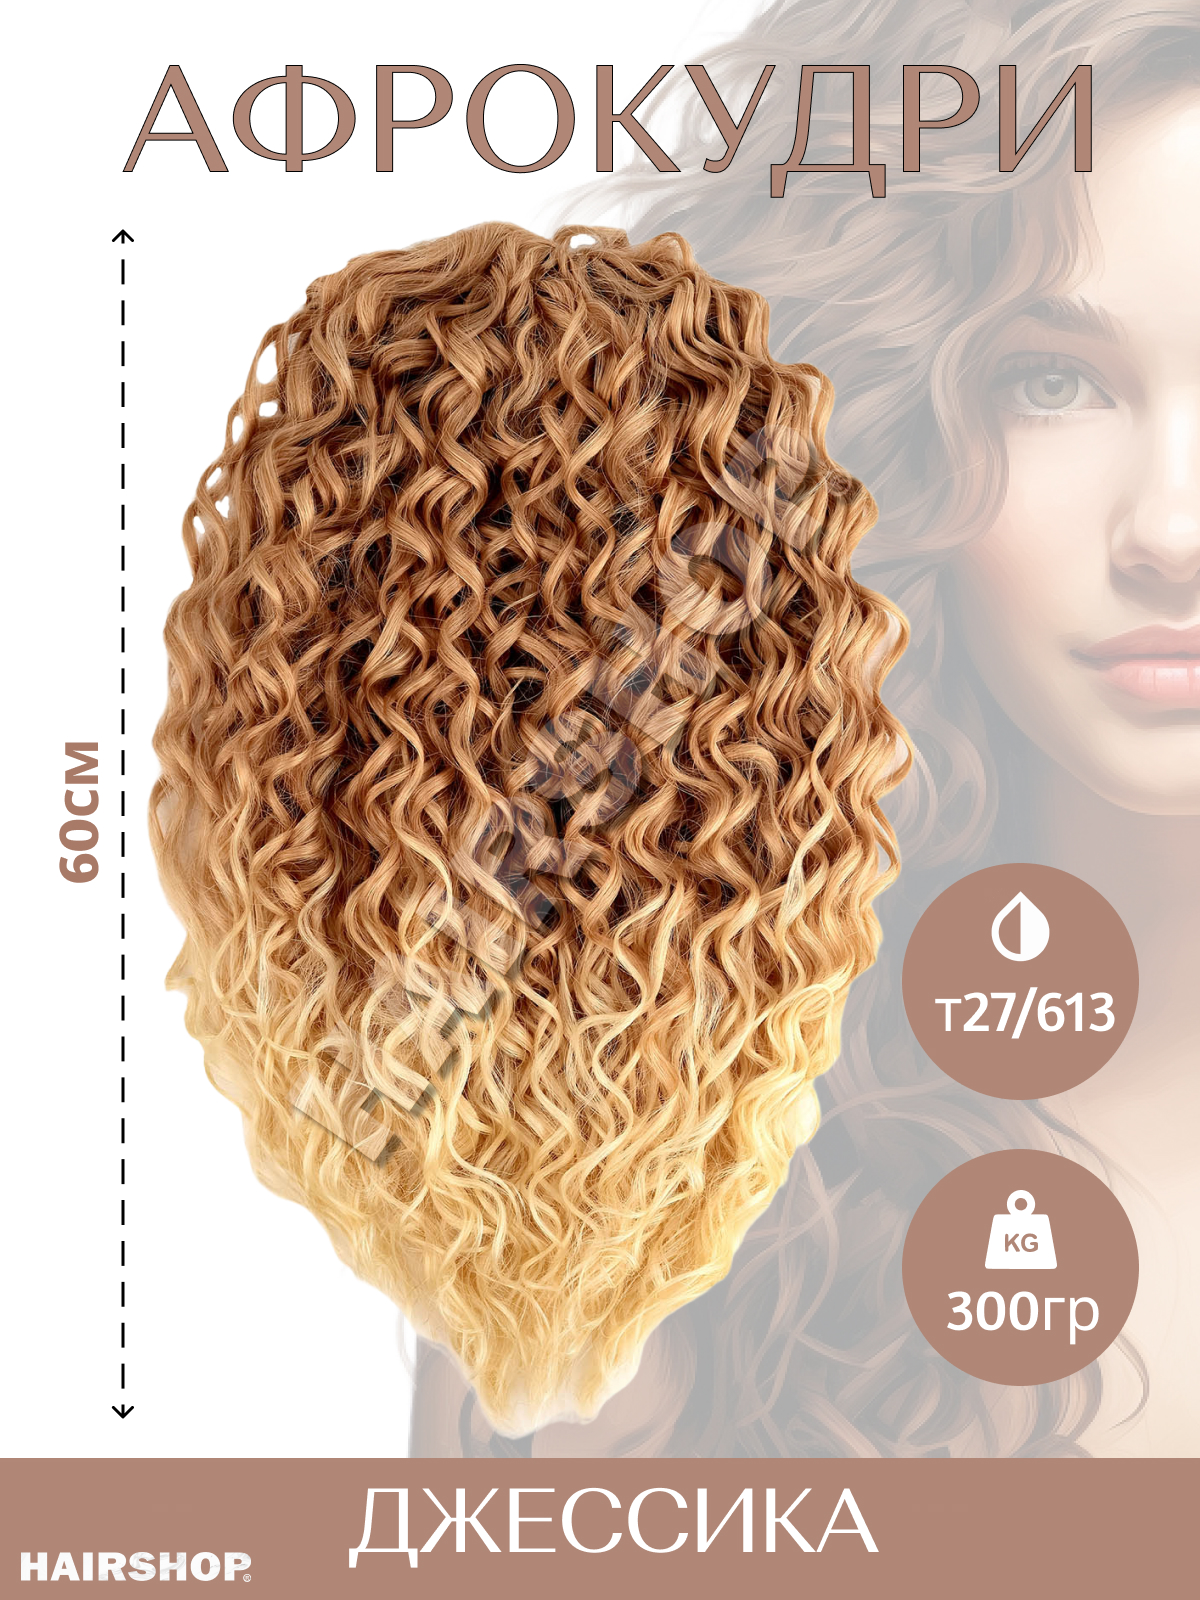 Волосы для наращивания HAIRSHOP Джессика T27/613 коричнево-рыжий с переходом в блонд 60см джессика джонс пульс полное издание